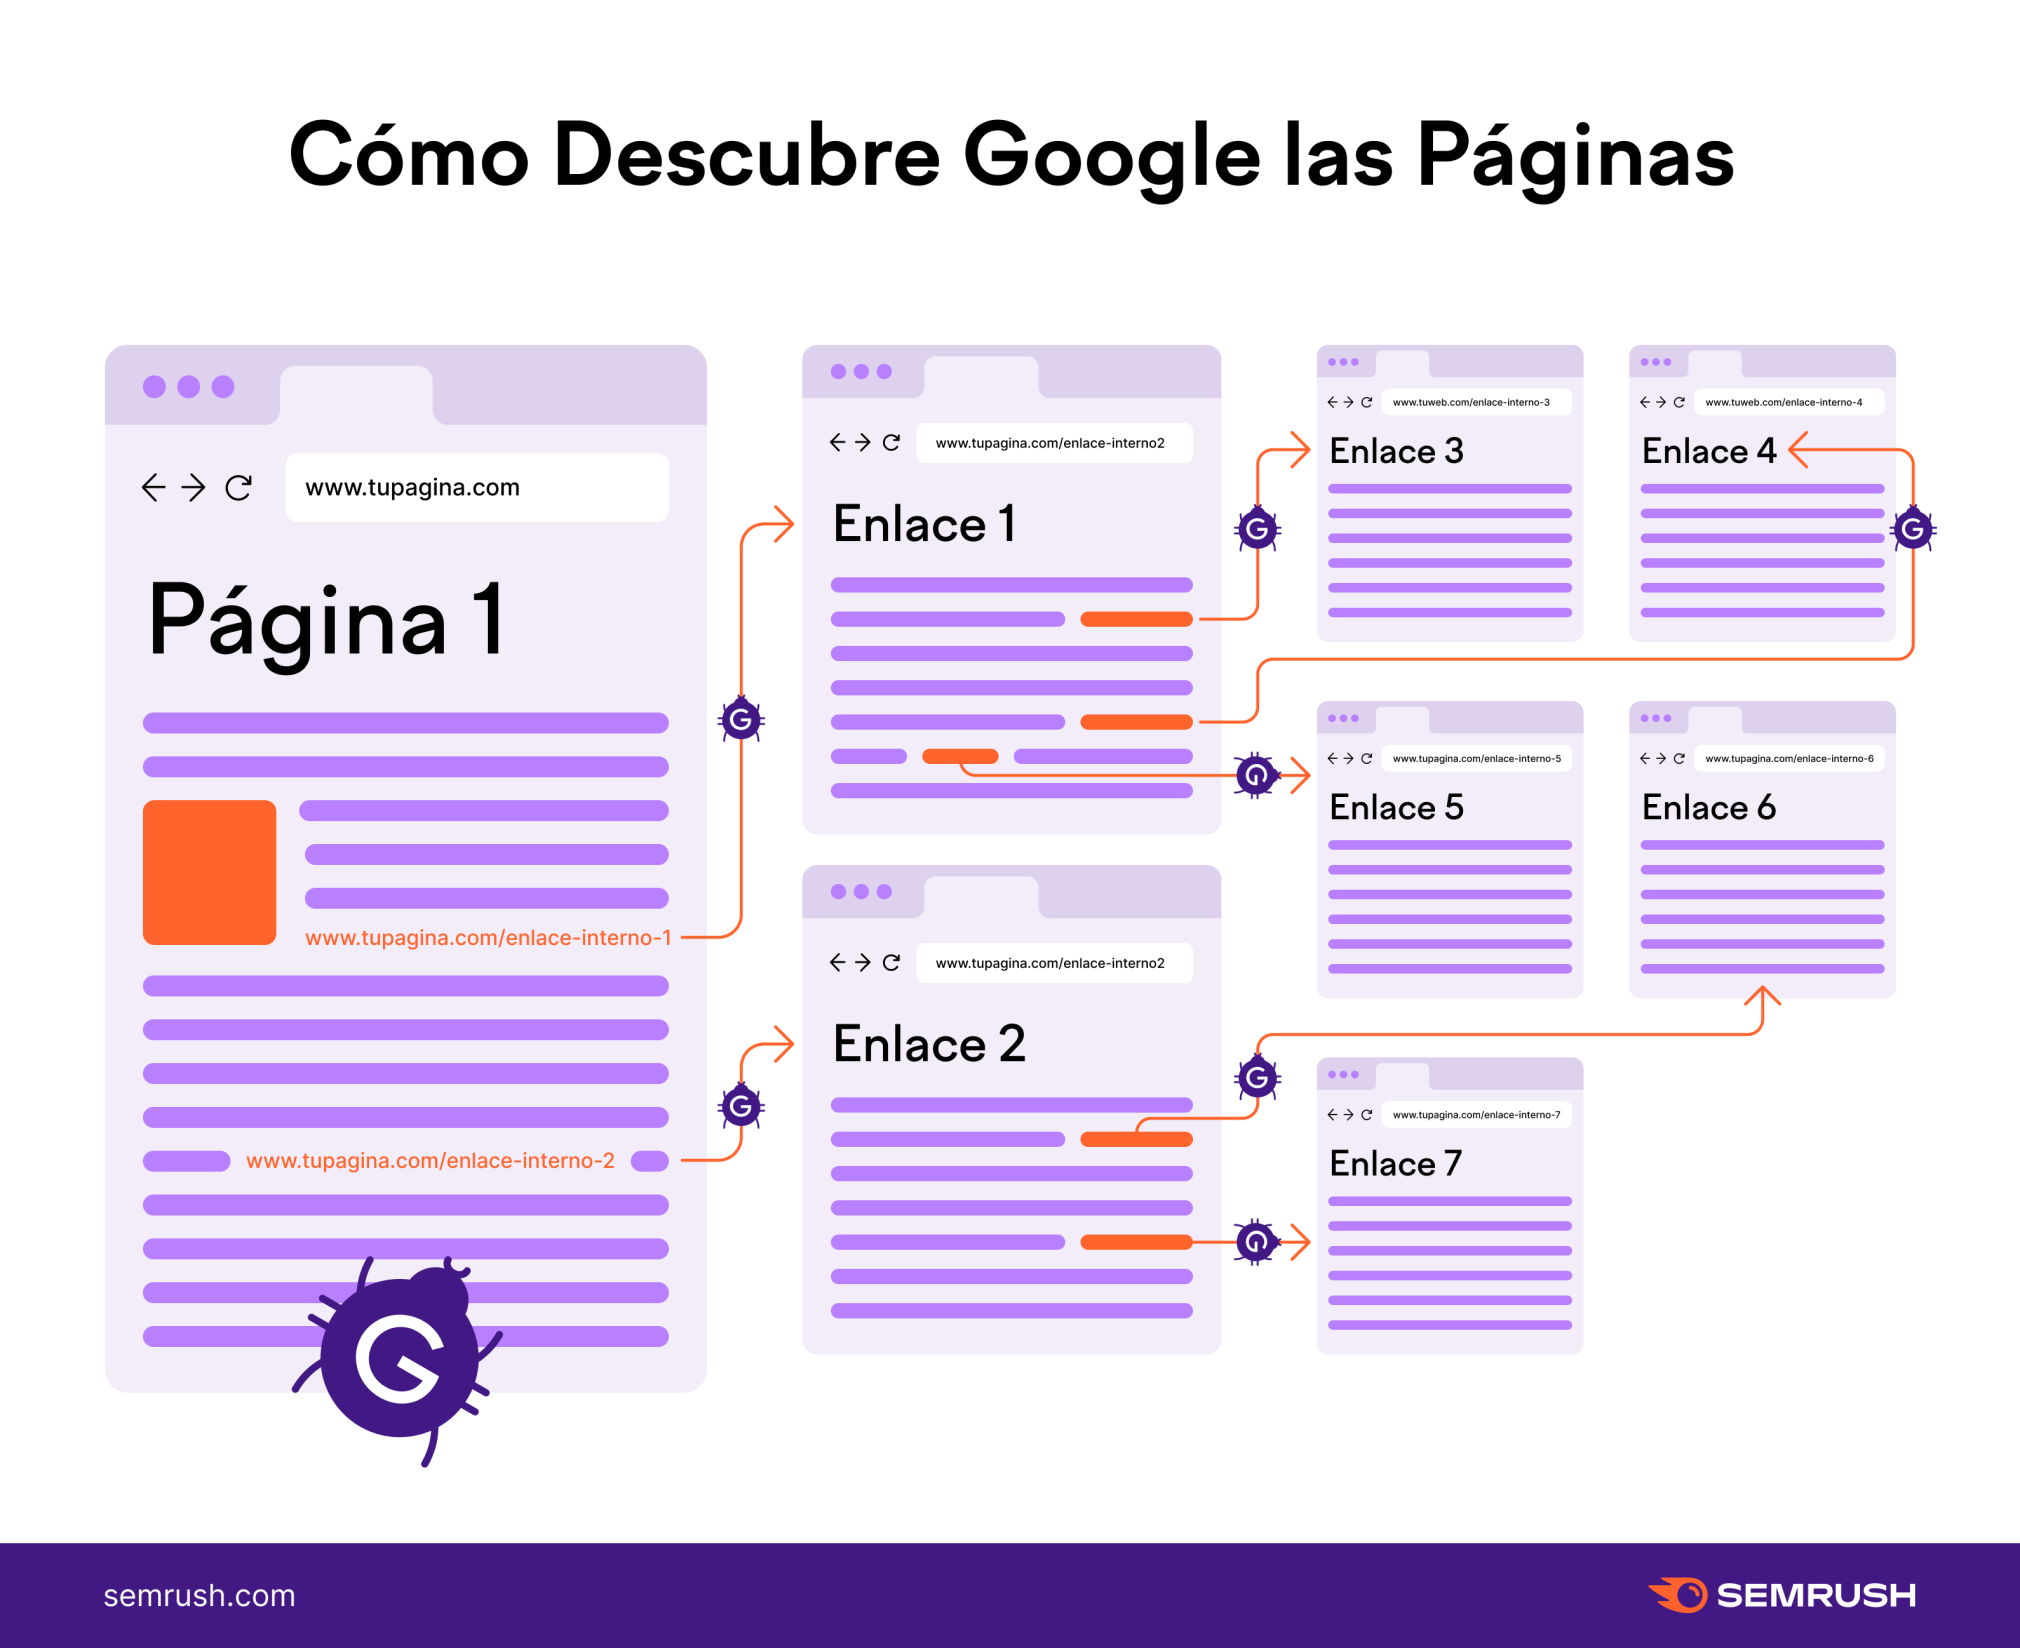 Infografía de Semrush sobre cómo descubre Google las páginas